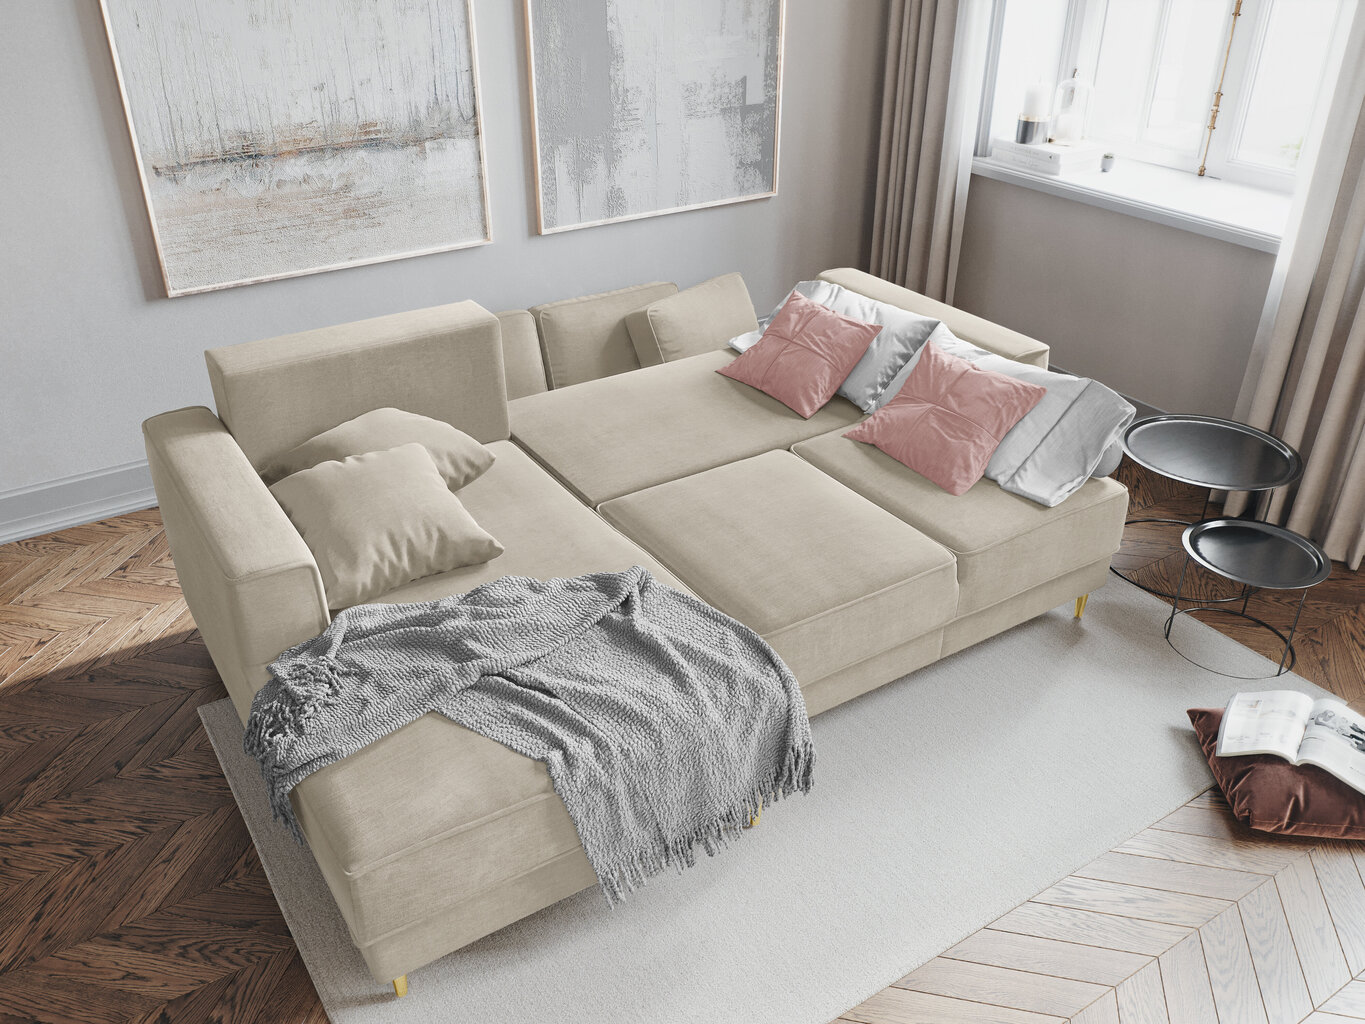 Stūra dīvāns Cosmopolitan Design Fano, smilškrāsas/zeltainas krāsas cena un informācija | Stūra dīvāni | 220.lv